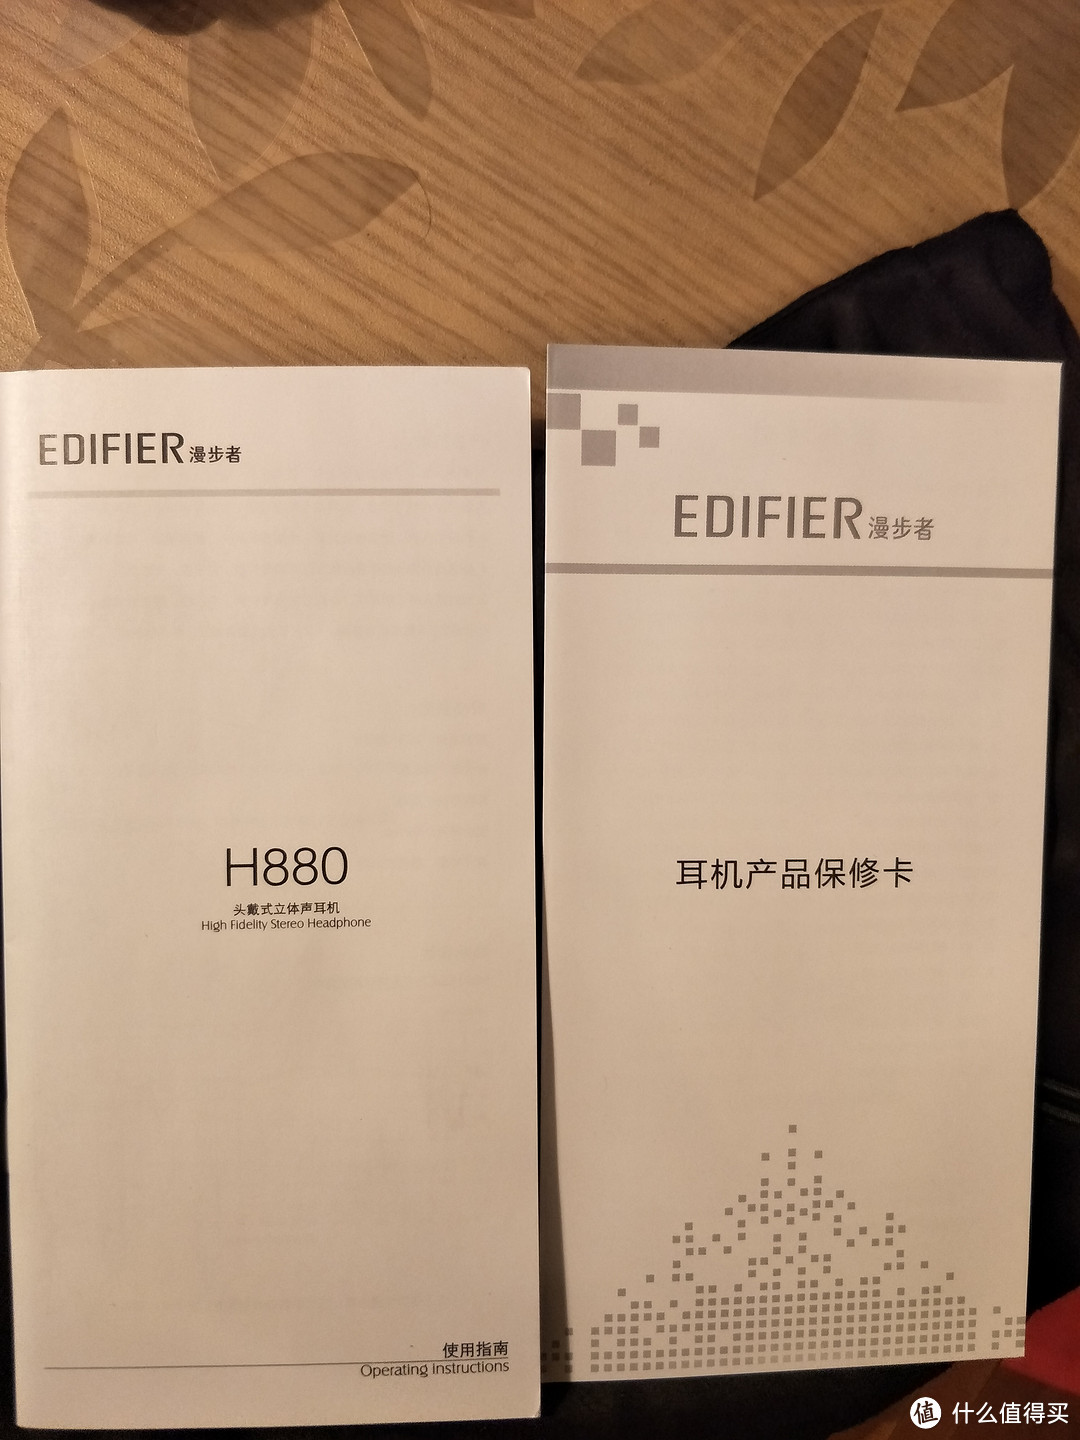 千元级的享受——Edifier H880耳机  众测跨年福袋